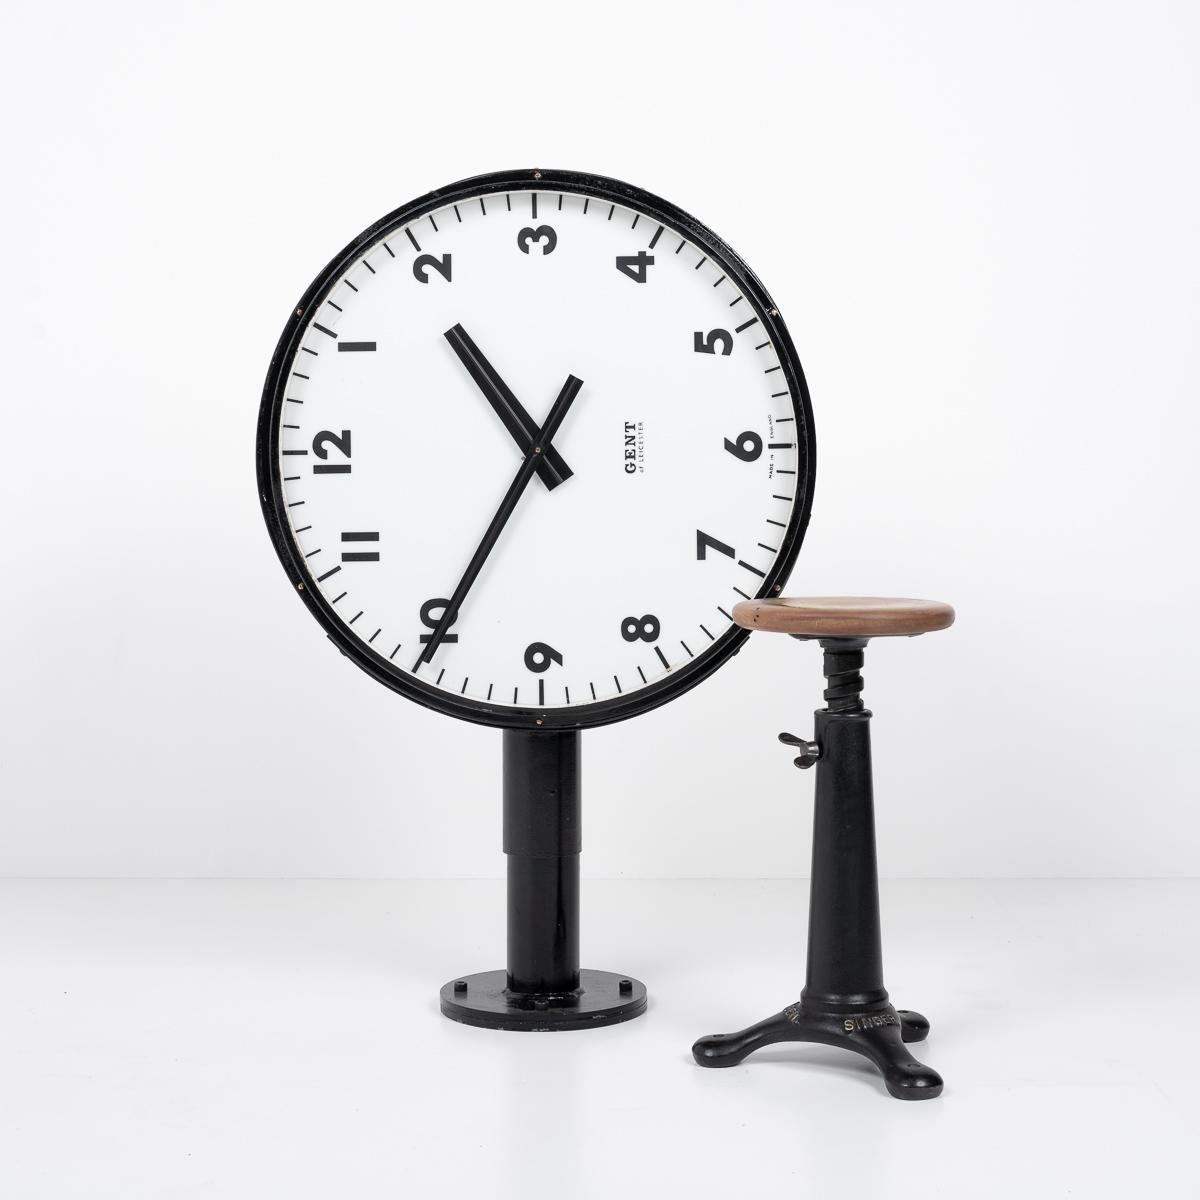 1960ER JAHRE BEIDSEITIG BELEUCHTETE BAHNHOFSUHR

Eine atemberaubende beidseitig beleuchtete Bahnhofsuhr, hergestellt von dem bekannten britischen Uhrenhersteller Gents of Leicester, um 1960.

Dieser kultige Zeitmesser mit seinem eleganten,